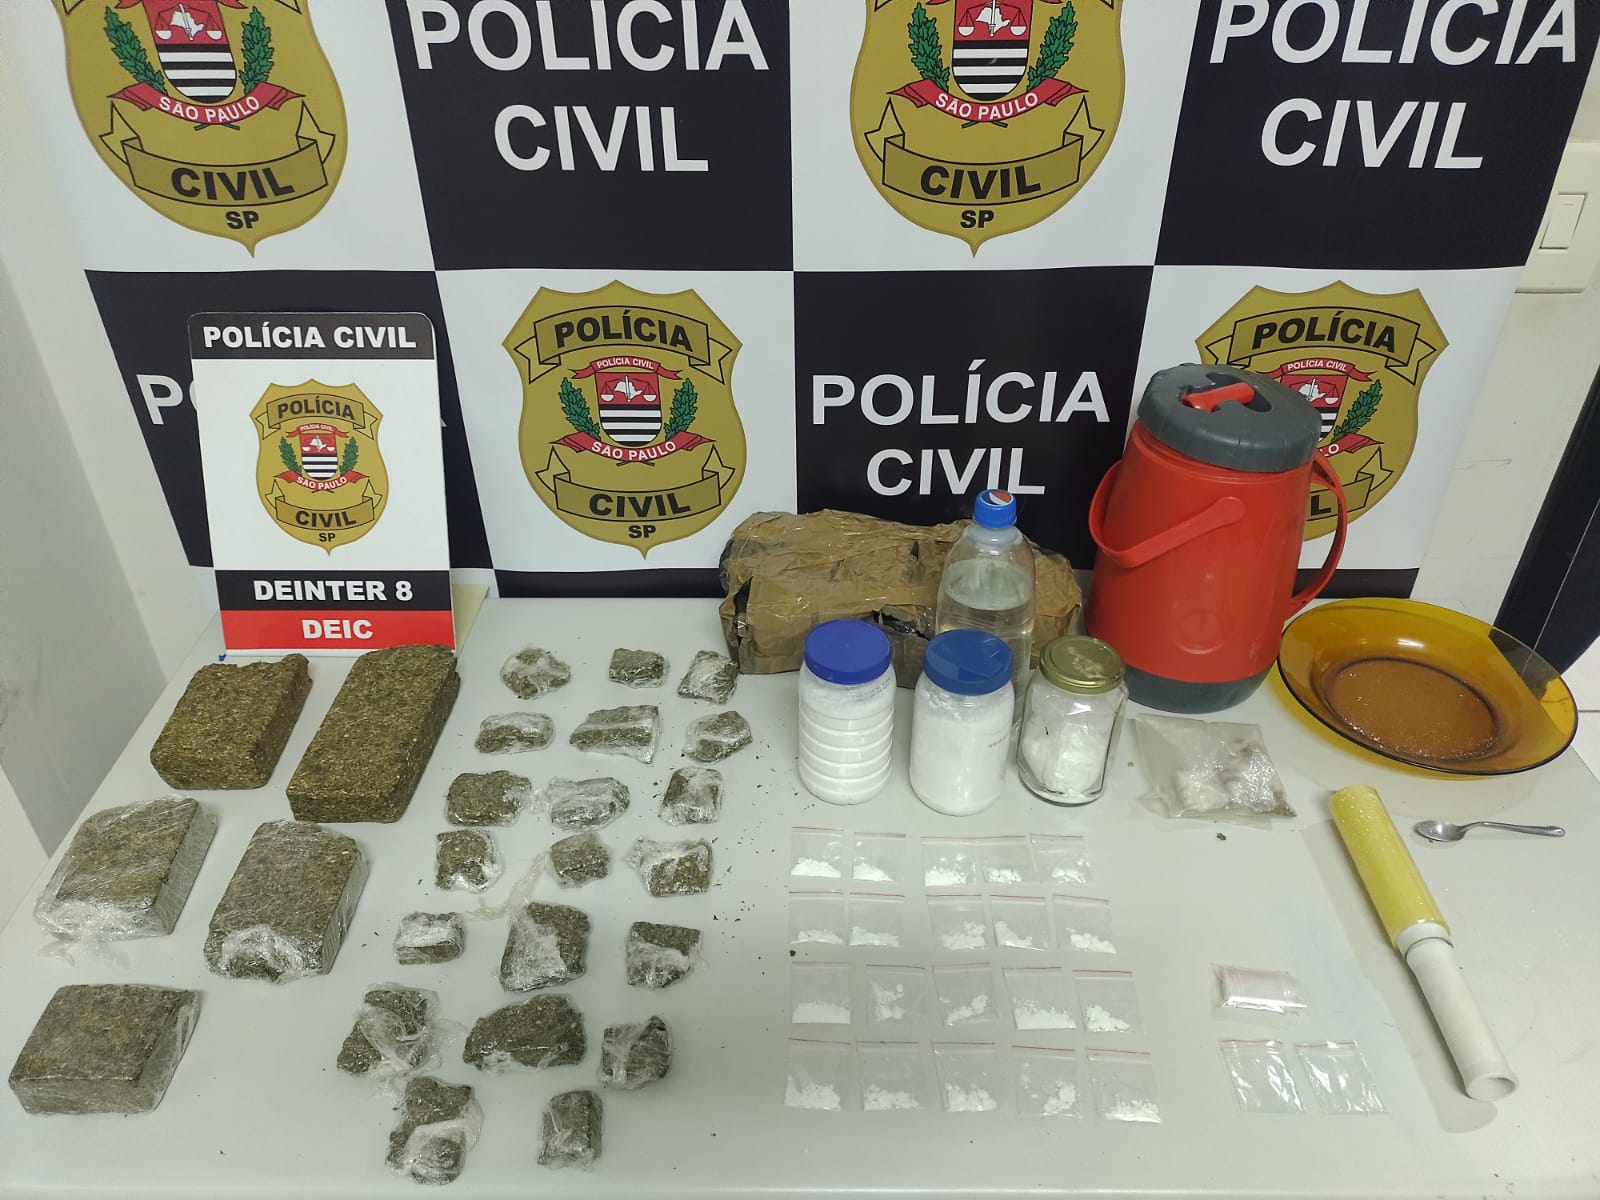 Policiais apreenderam 1.956,70 kg de maconha e 84 gramas de cocaína durante operação